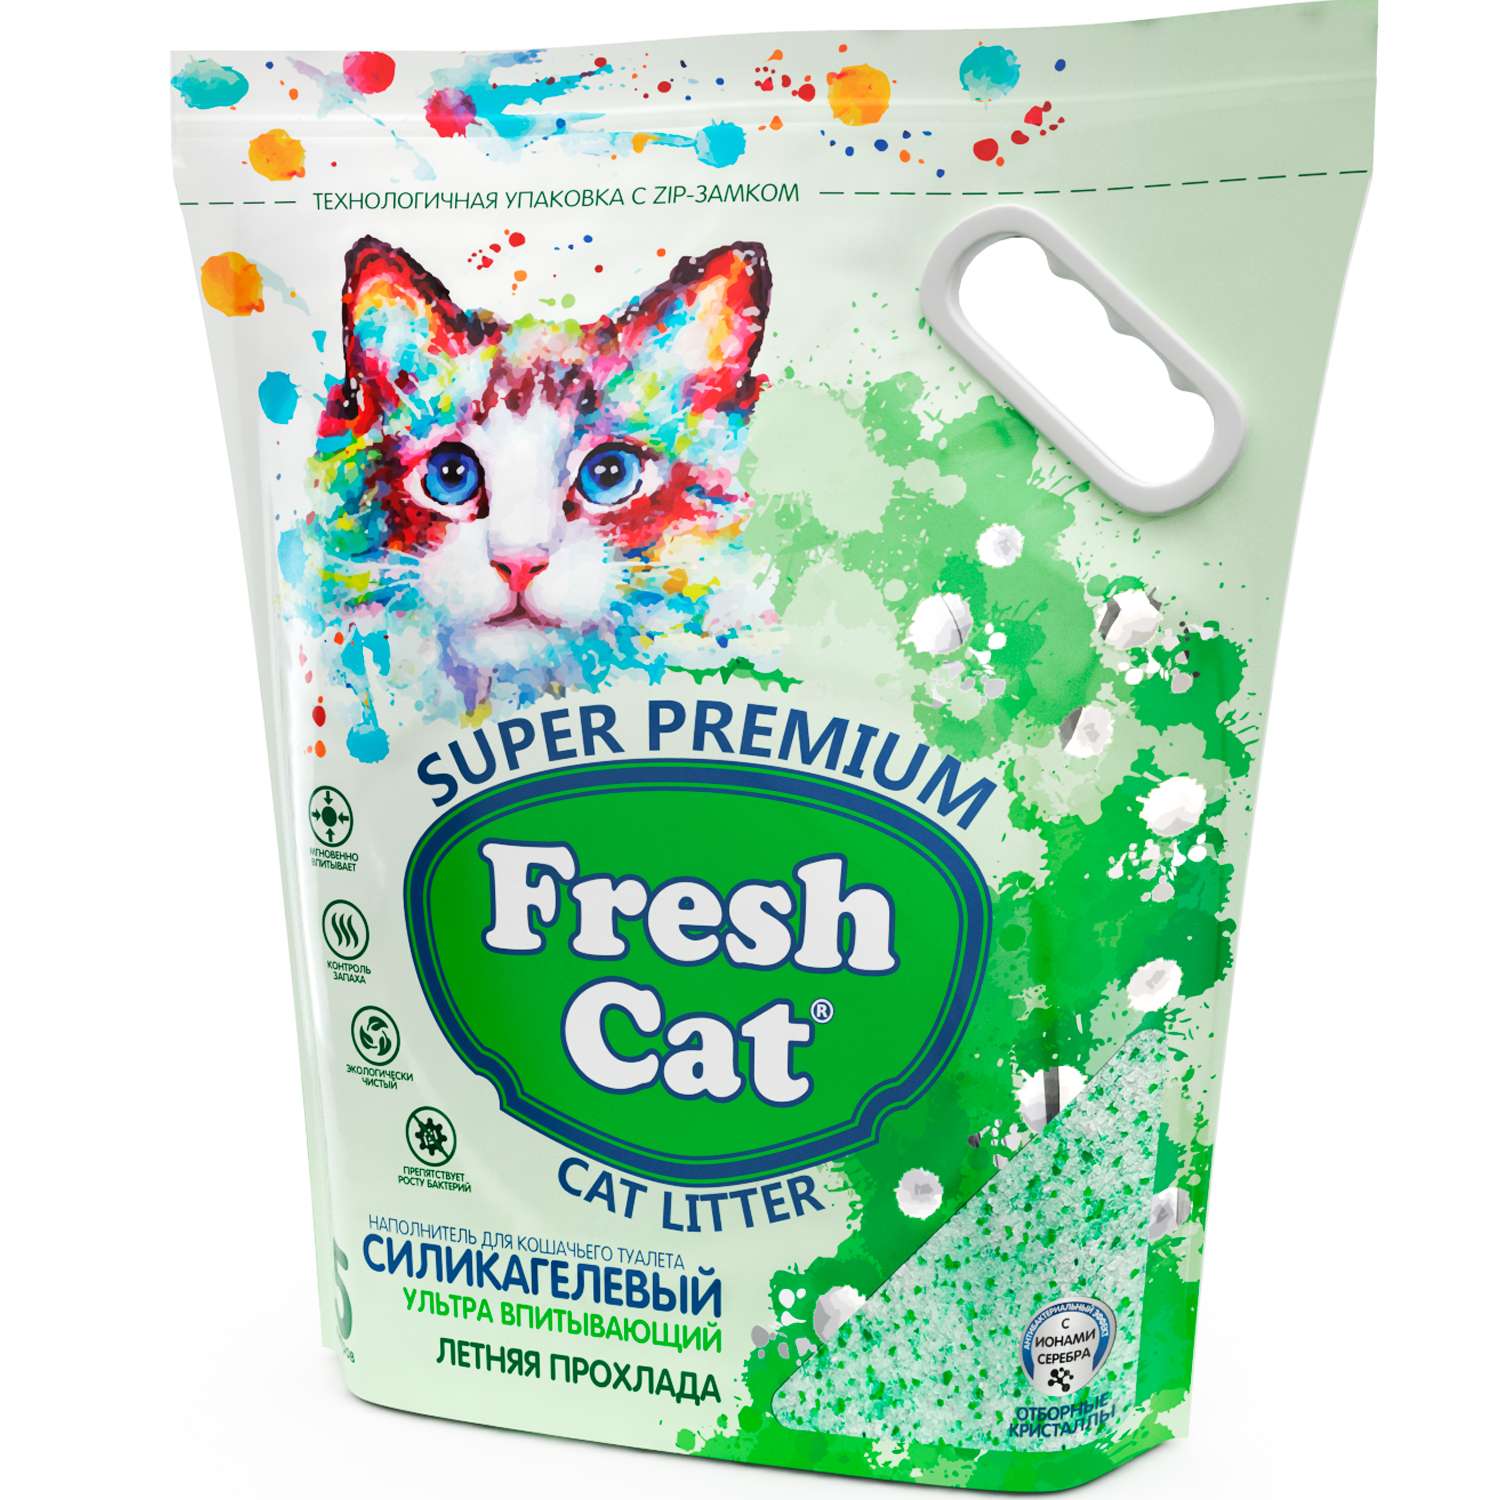 Наполнитель для кошек Fresh Cat силикагелевый Летняя прохлада 2кг - фото 2